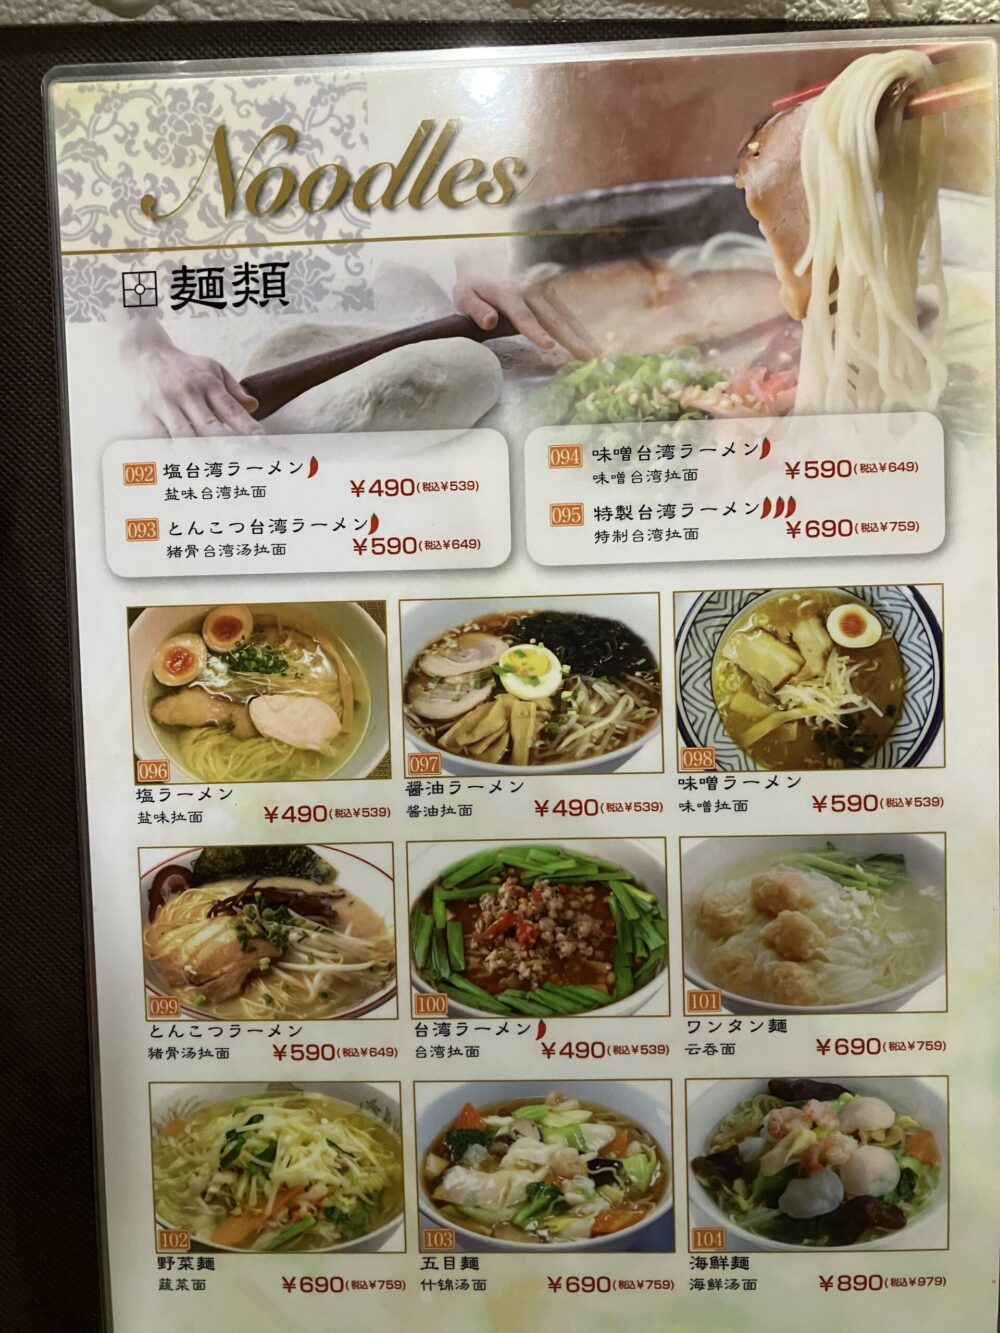 「吉味」の麺類メニュー